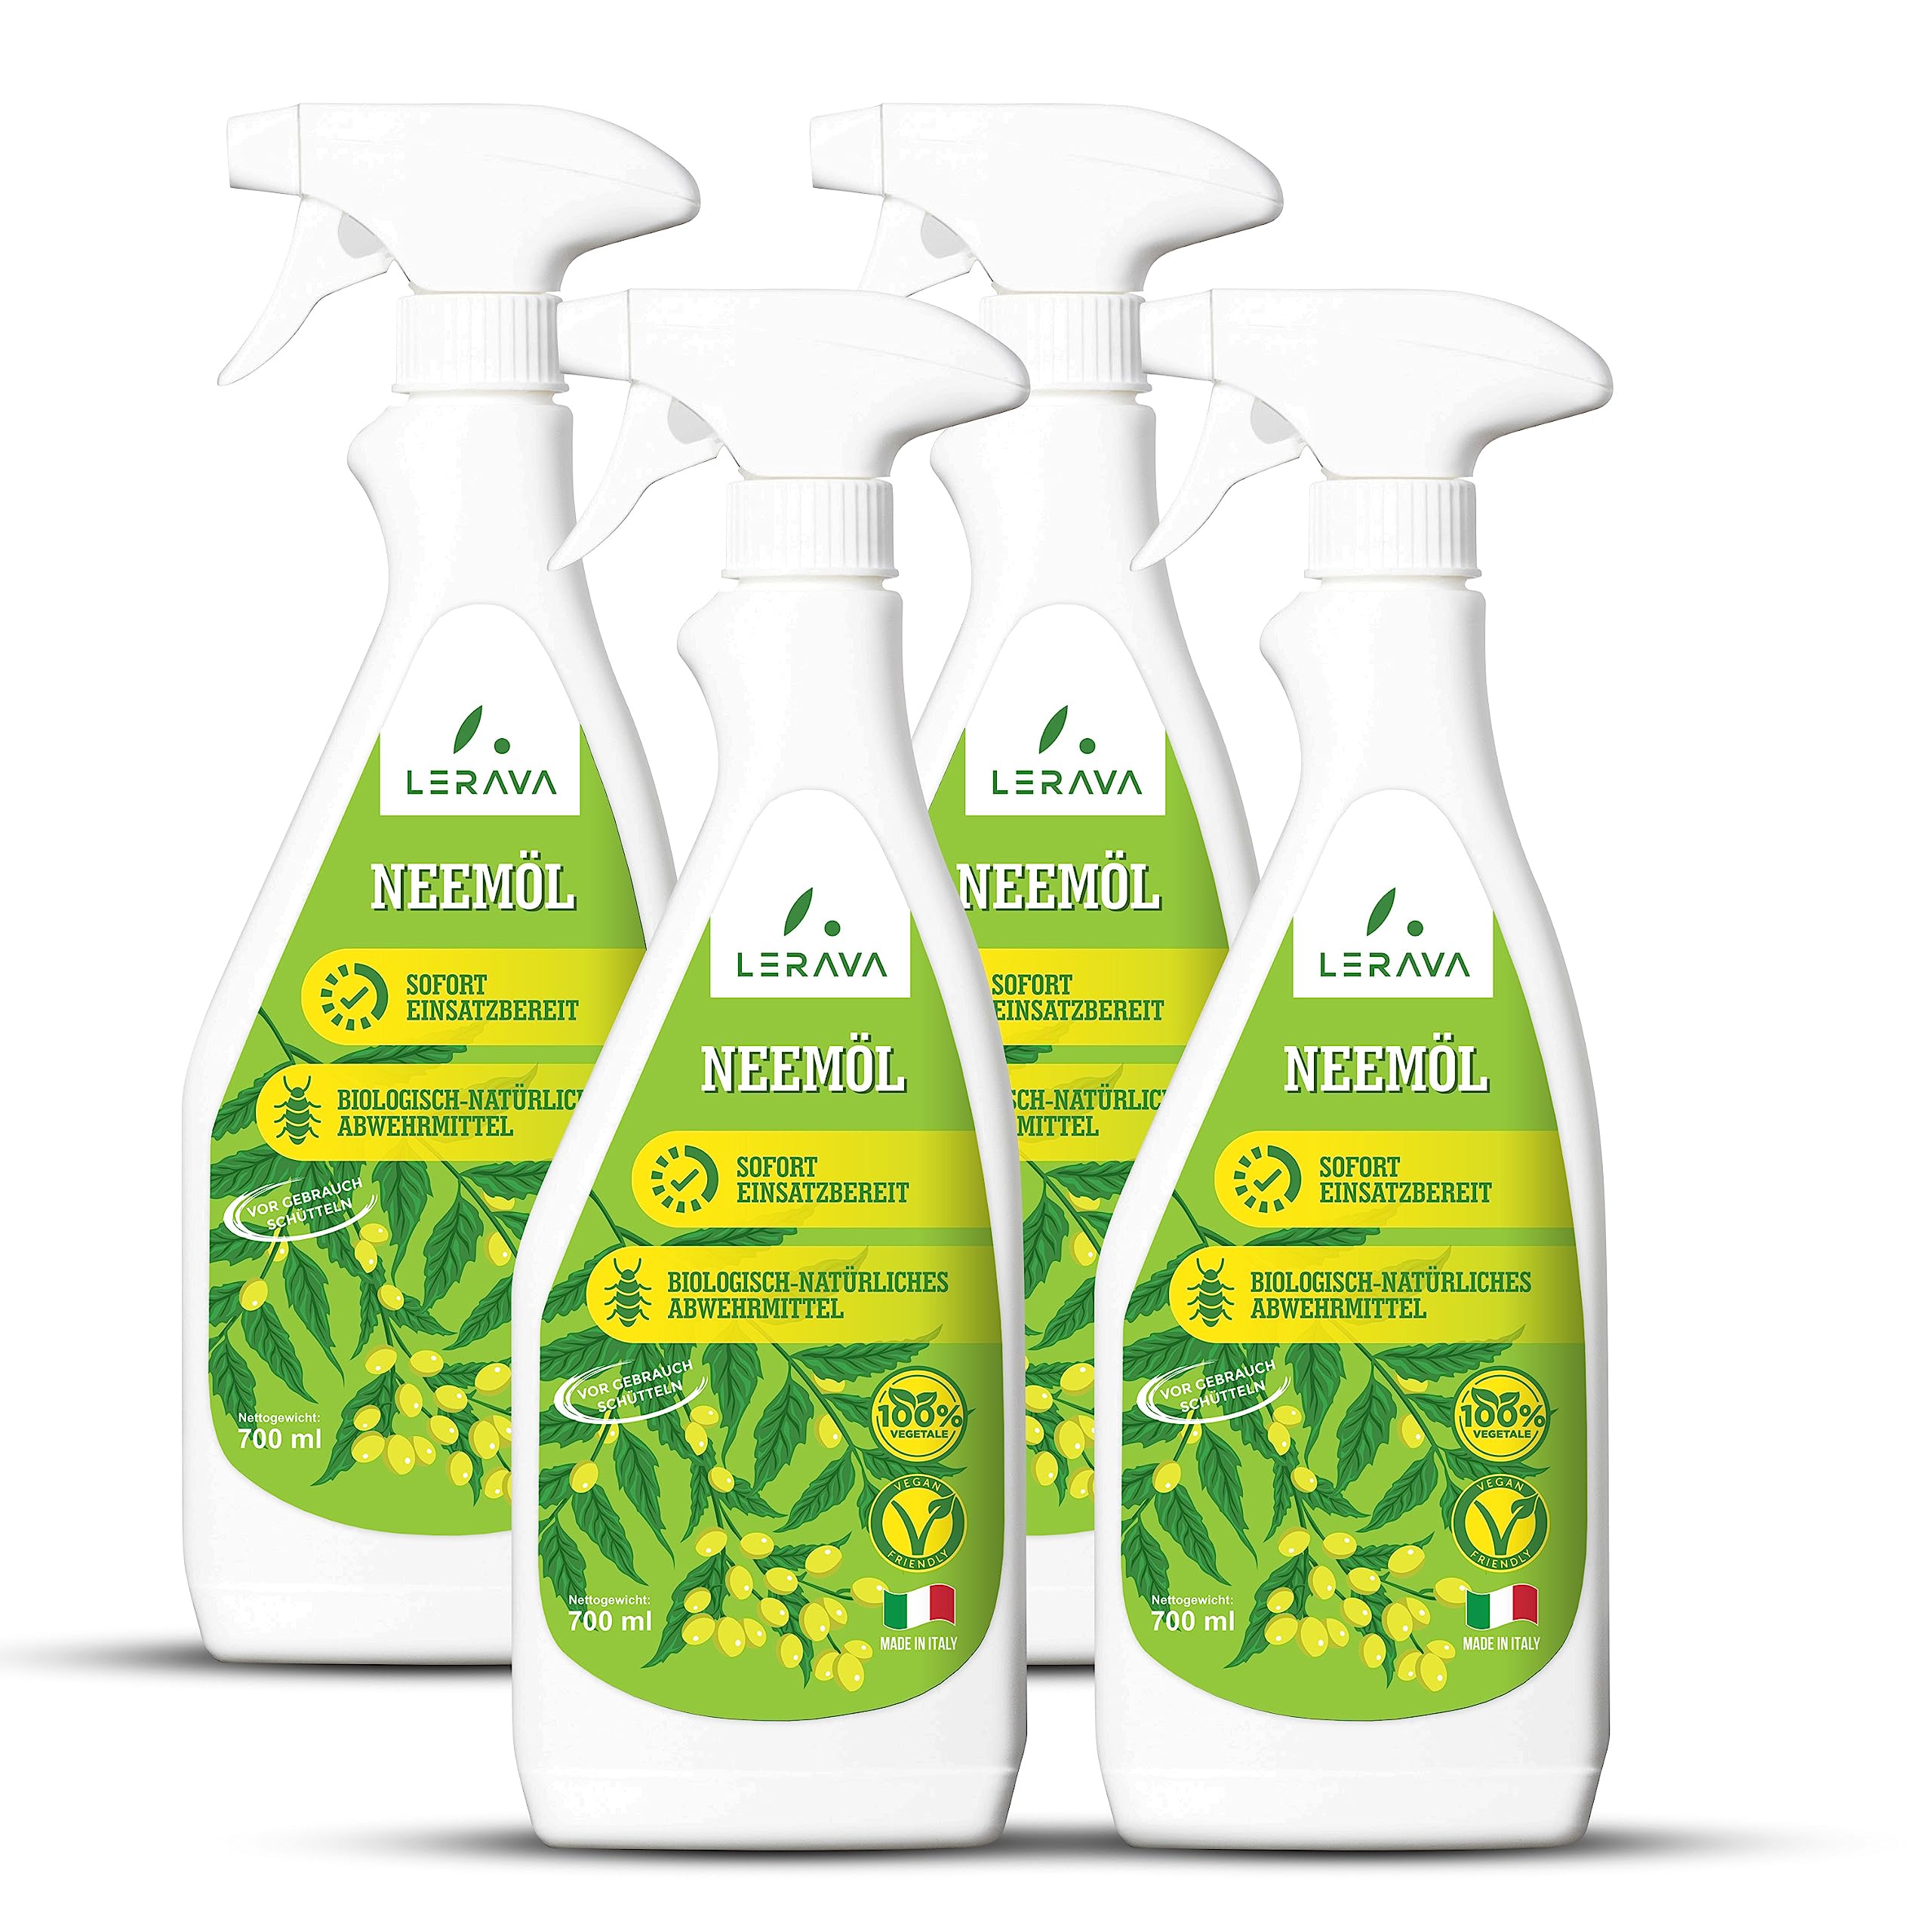 LERAVA® Neemöl für Pflanzen - Gebrauchsfertiges Spray - Neemöl Schädlingsbekämpfung 100% bio - Ideal gegen Trauermücken und Larvenentwicklung - Neemöl mit Emulgator - 100% Made in Italy - 4 x 700ml